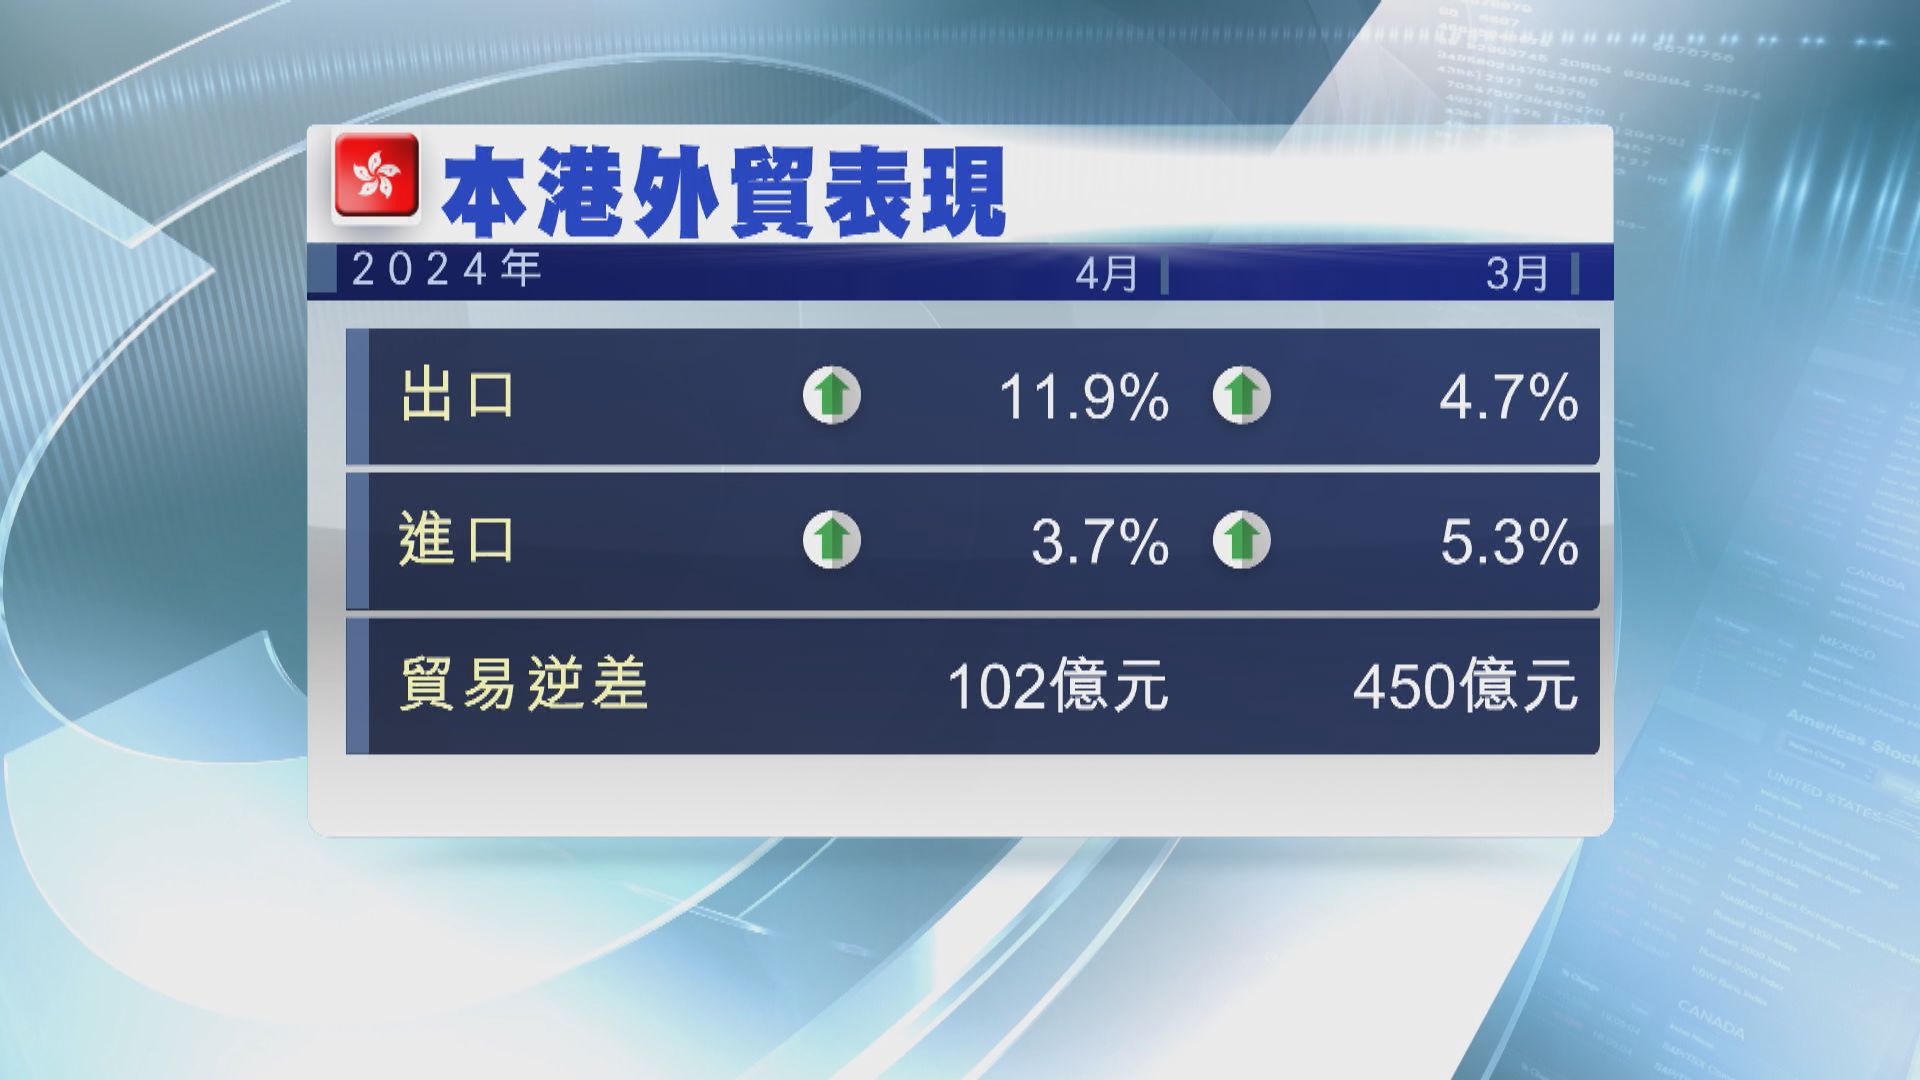 本港4月出口升幅擴大至11.9% 勝預期